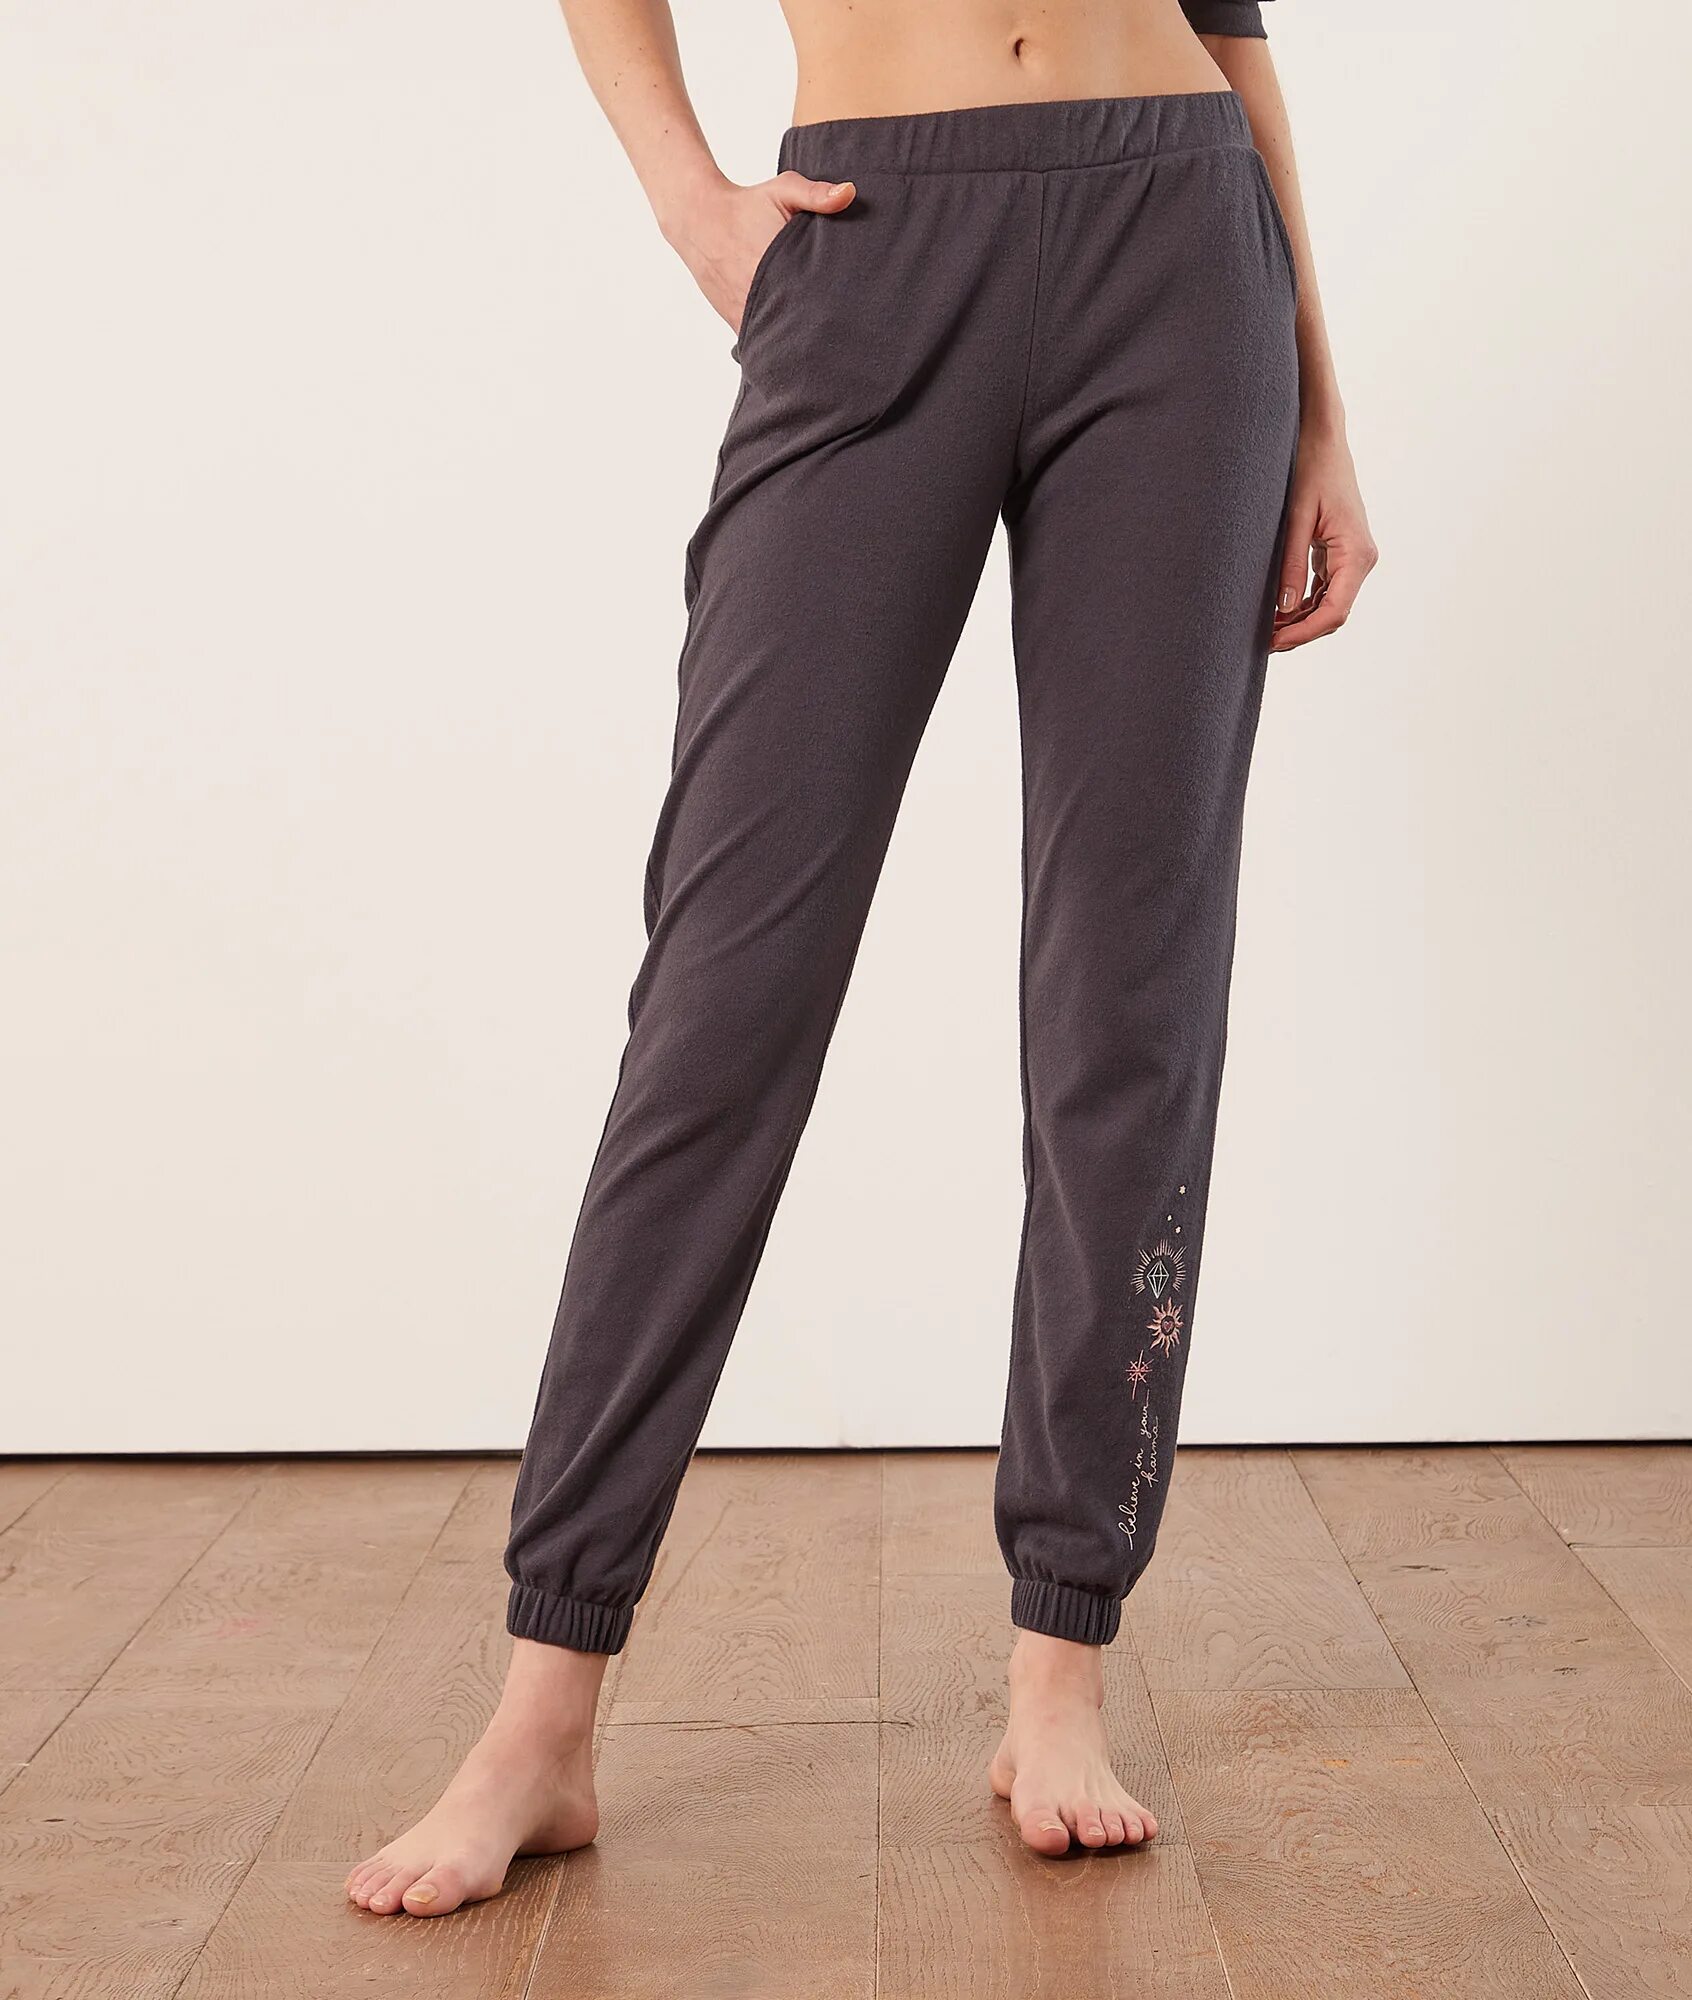 Lime спортивные брюки на резинке 7817-852. Пижамные штаны. Брюки вискоза женские. Пижамные штаны однотонные.